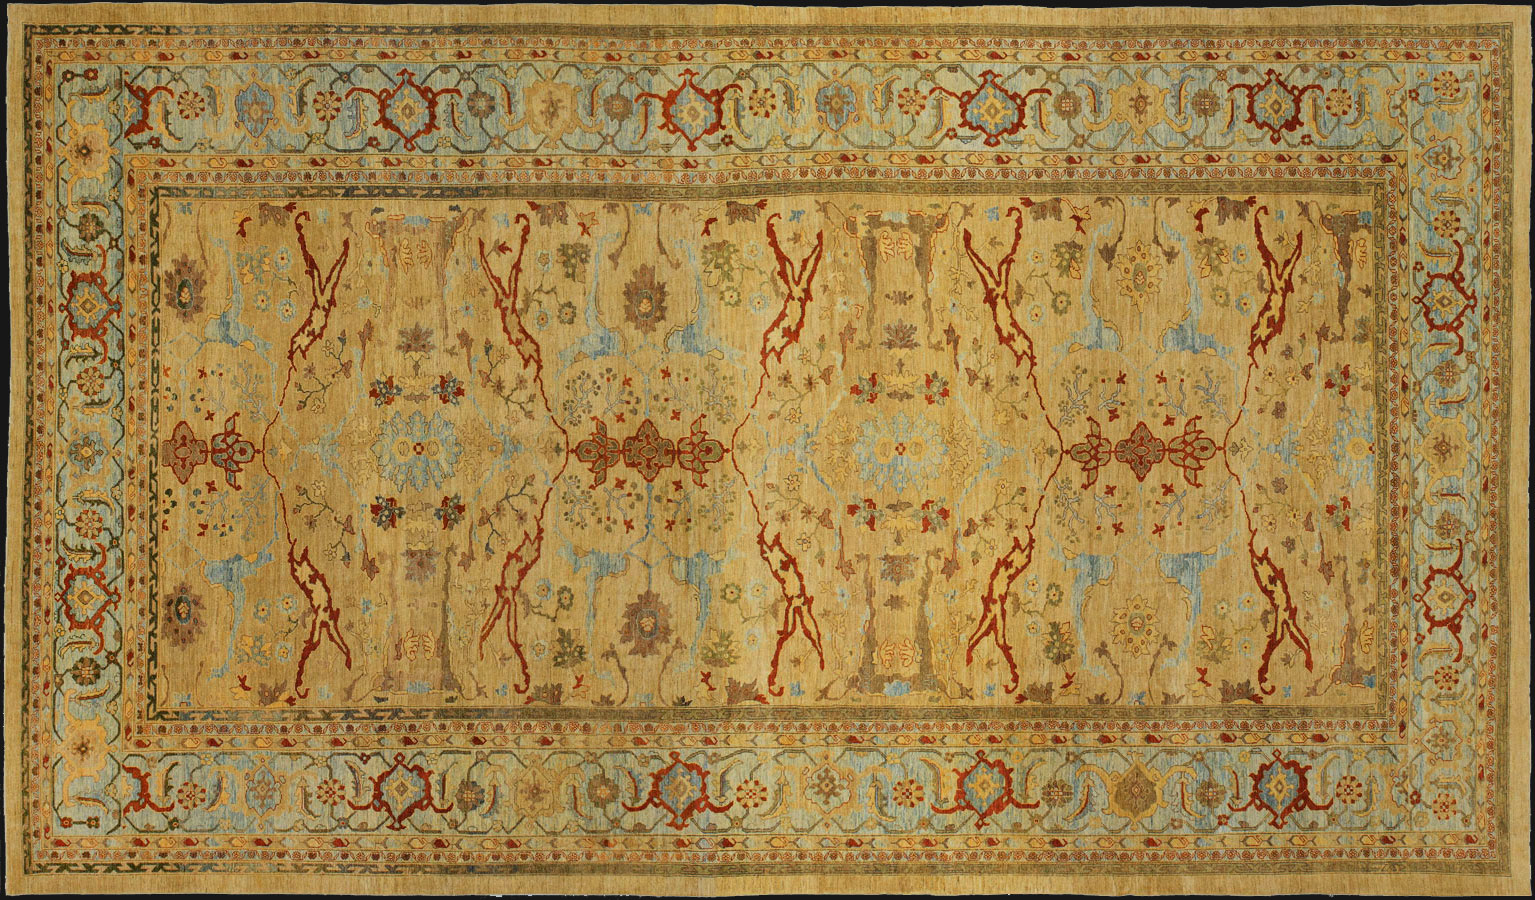 sultan abad Carpet - # 51121